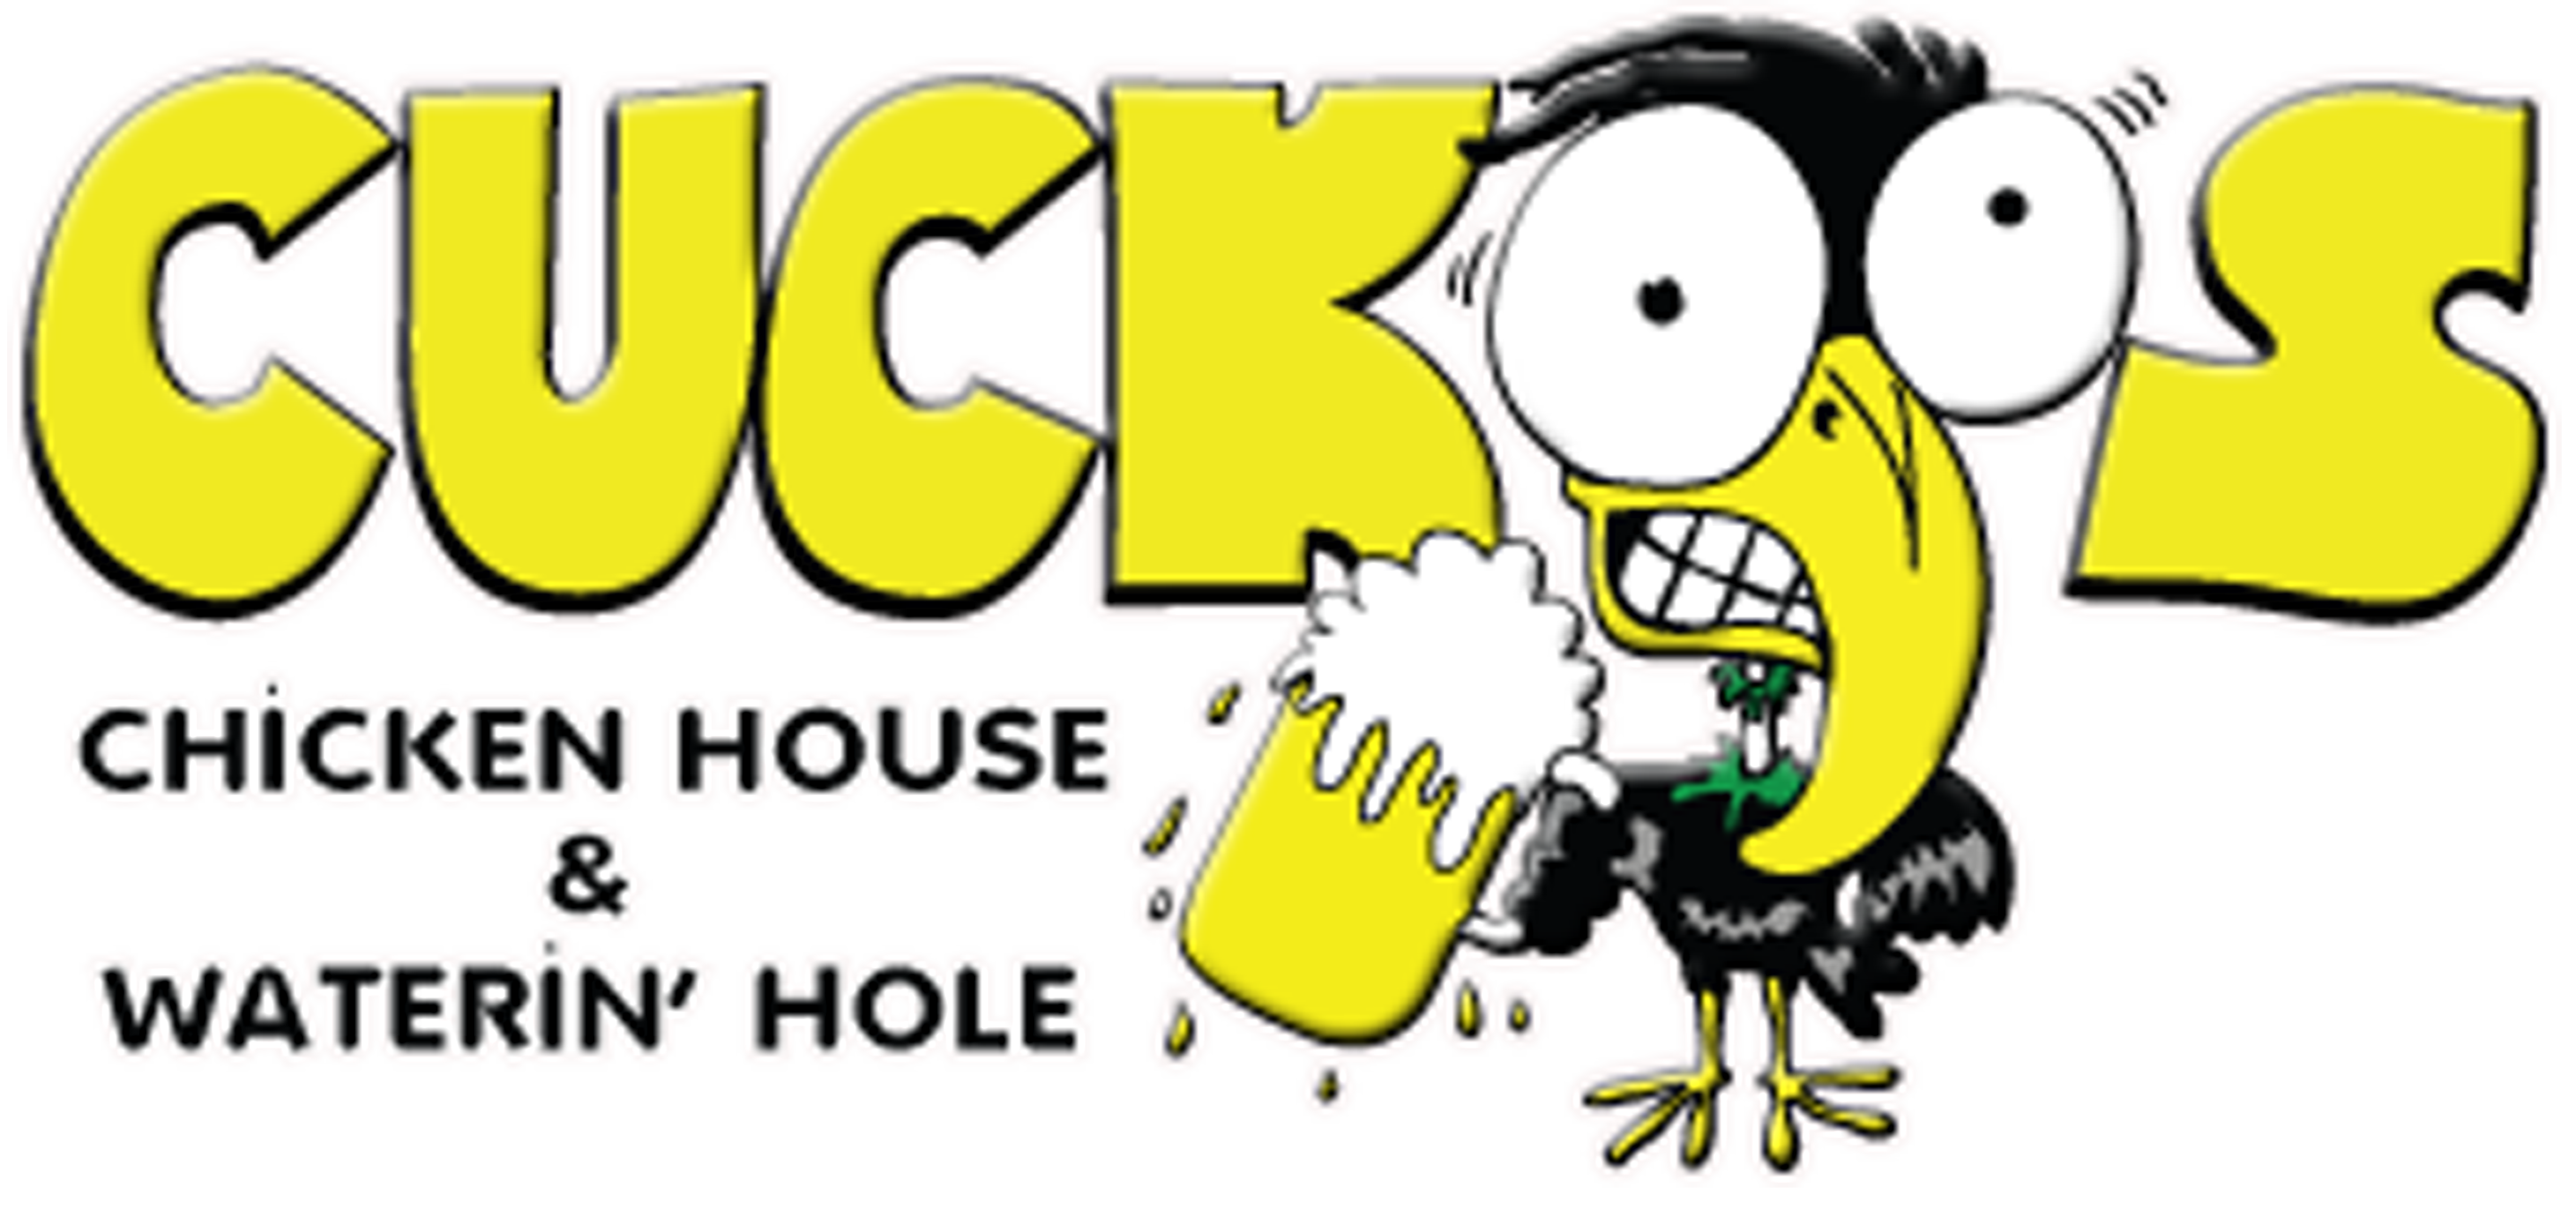 Cuckoo's Chicken House